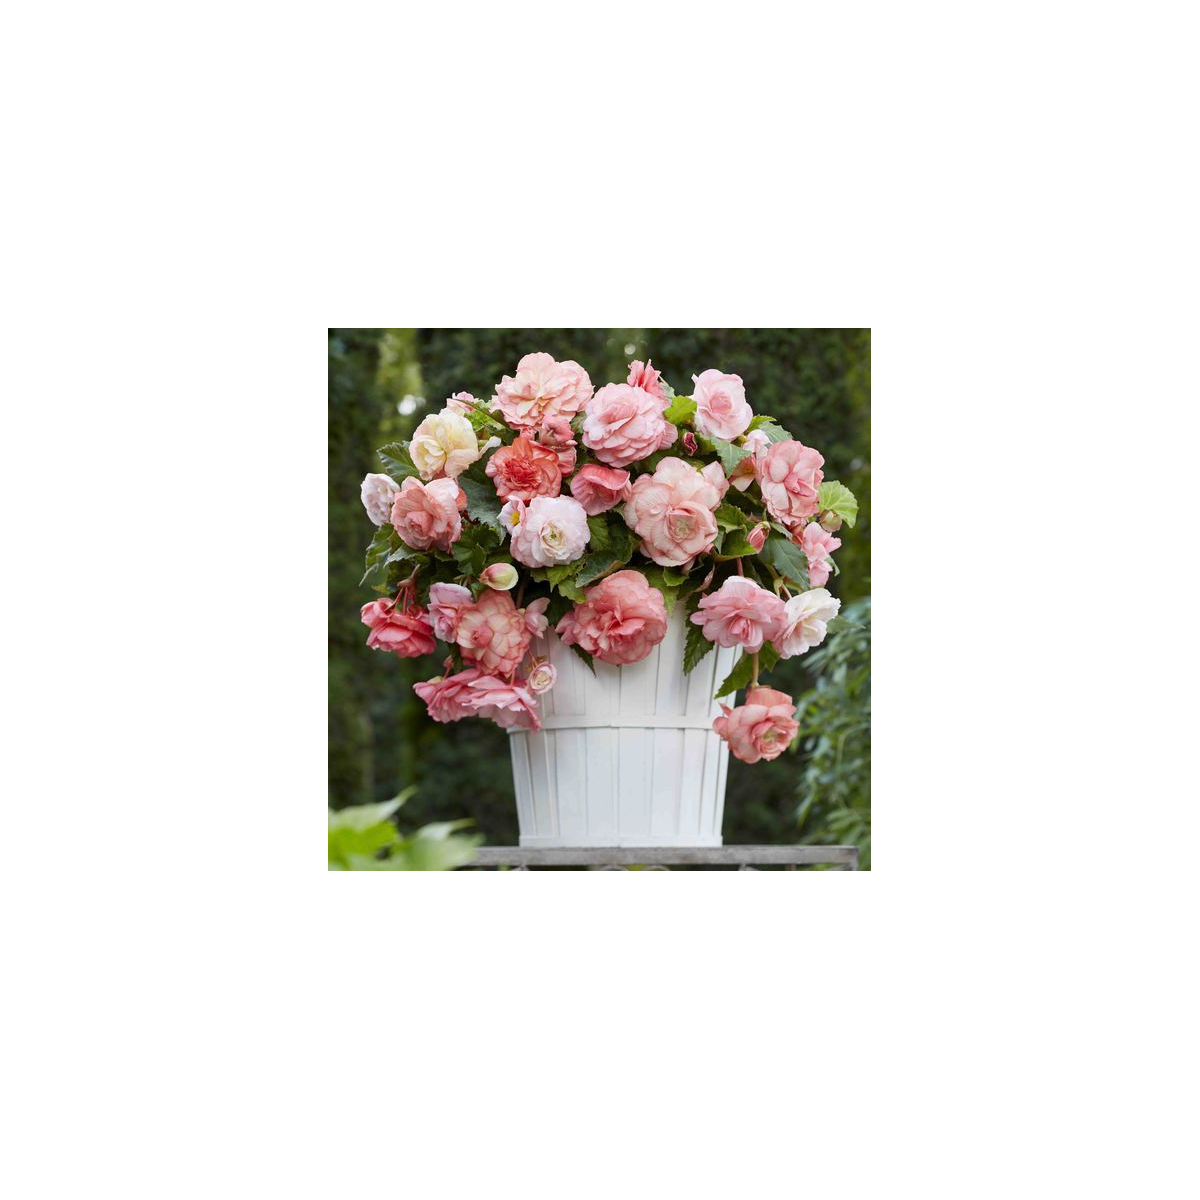 Begonie Flamenca - Begonia splendide - hlízy begonie - 2 ks